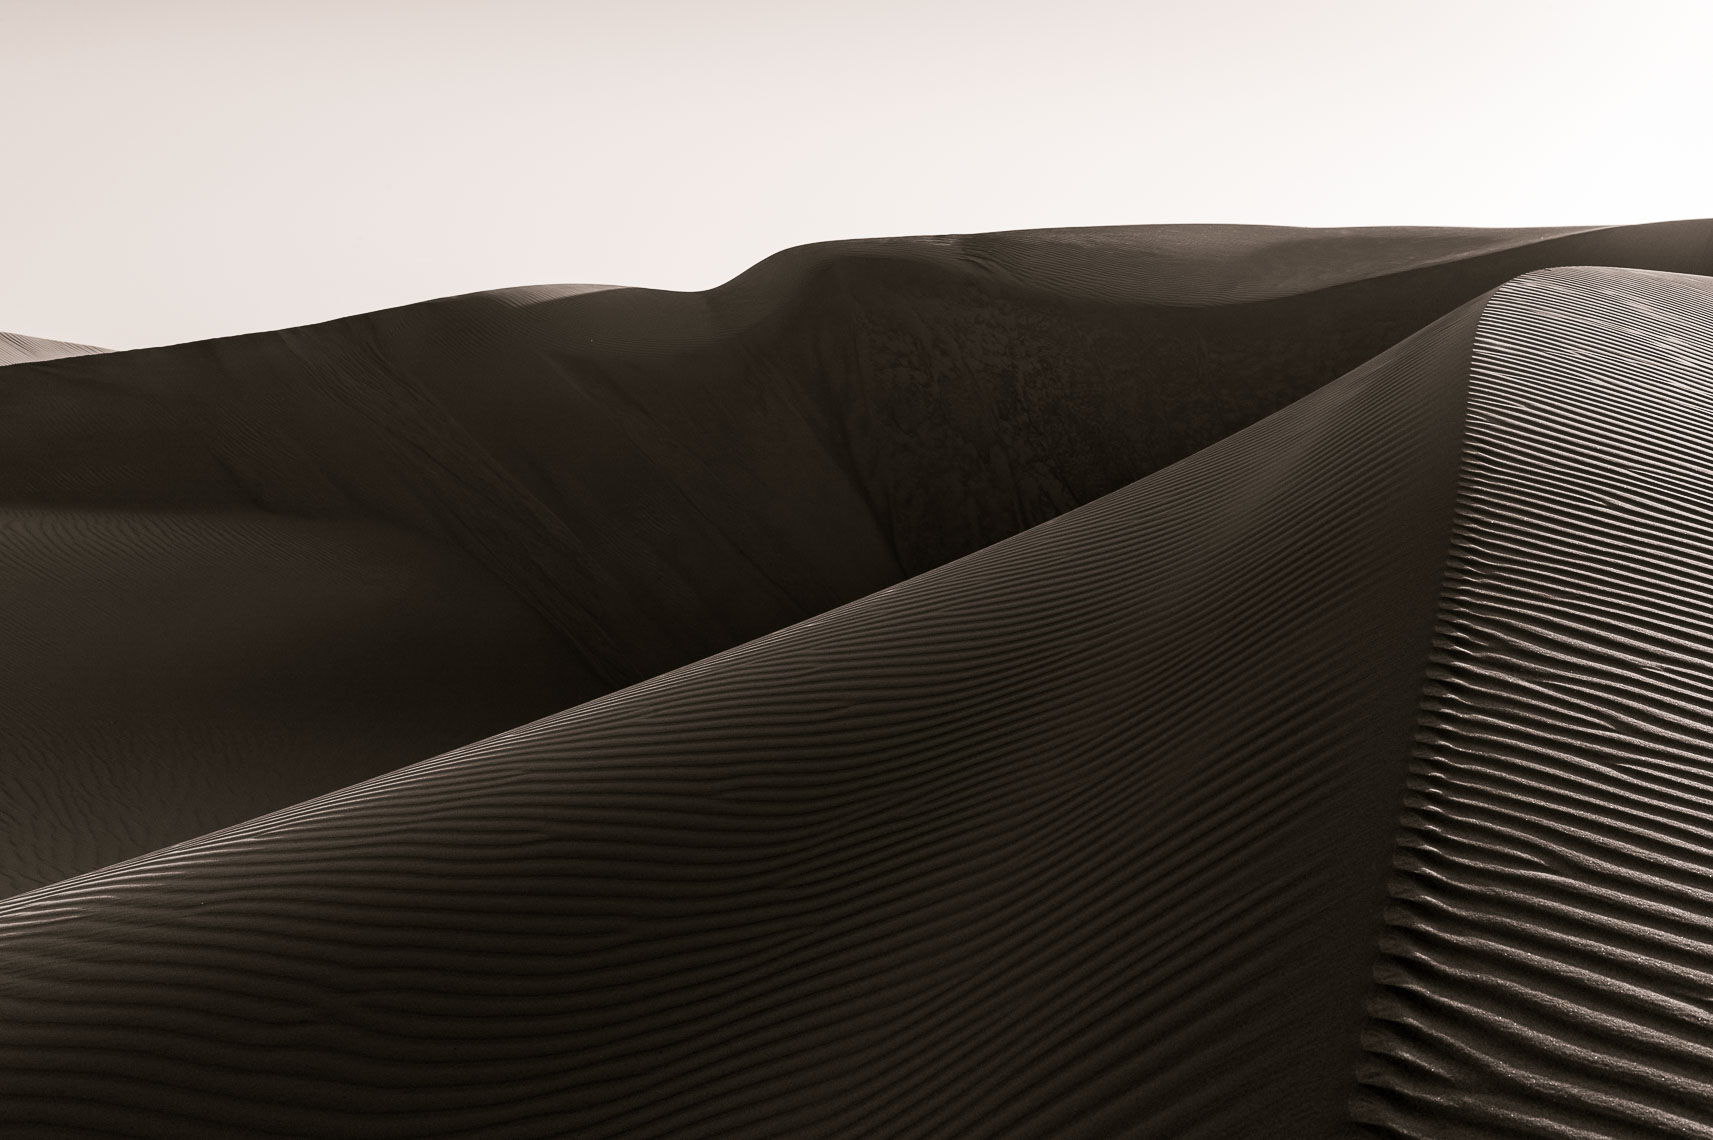 Oceano Dunes